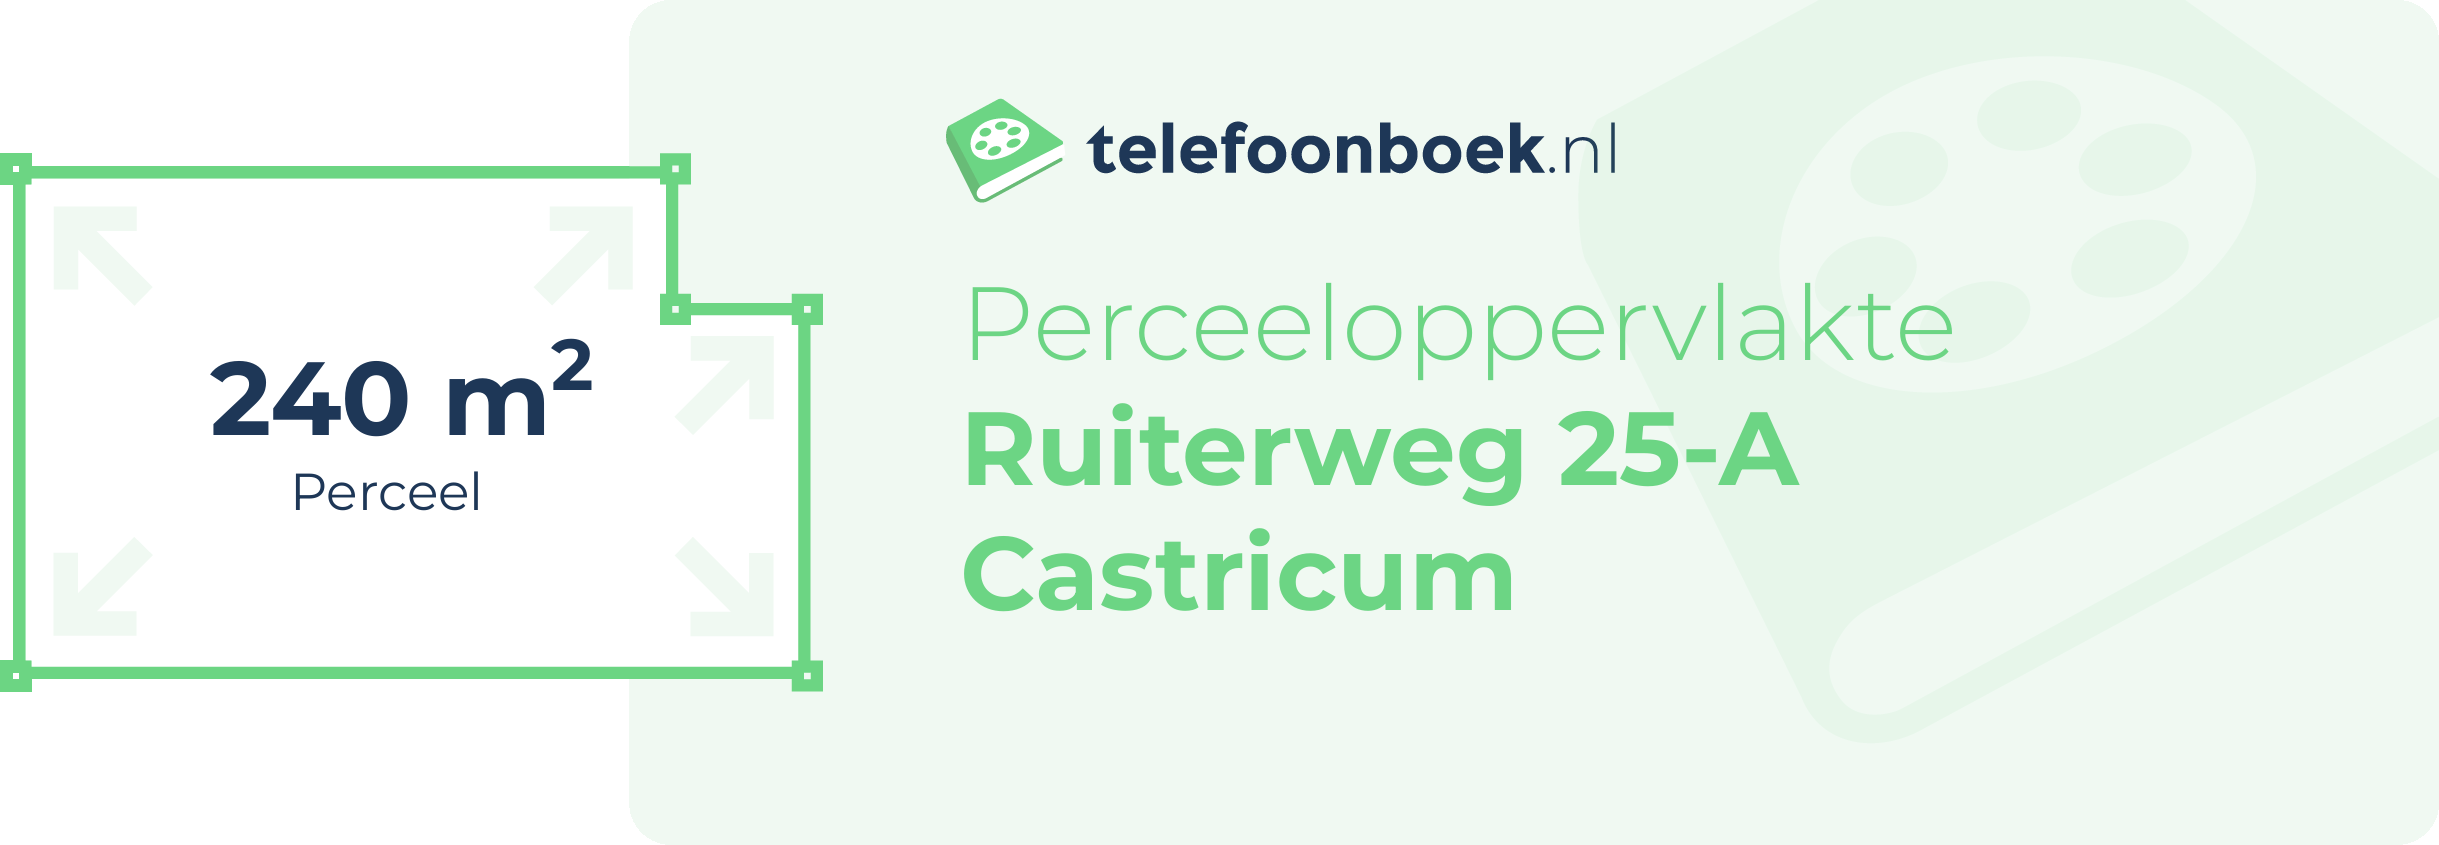 Perceeloppervlakte Ruiterweg 25-A Castricum